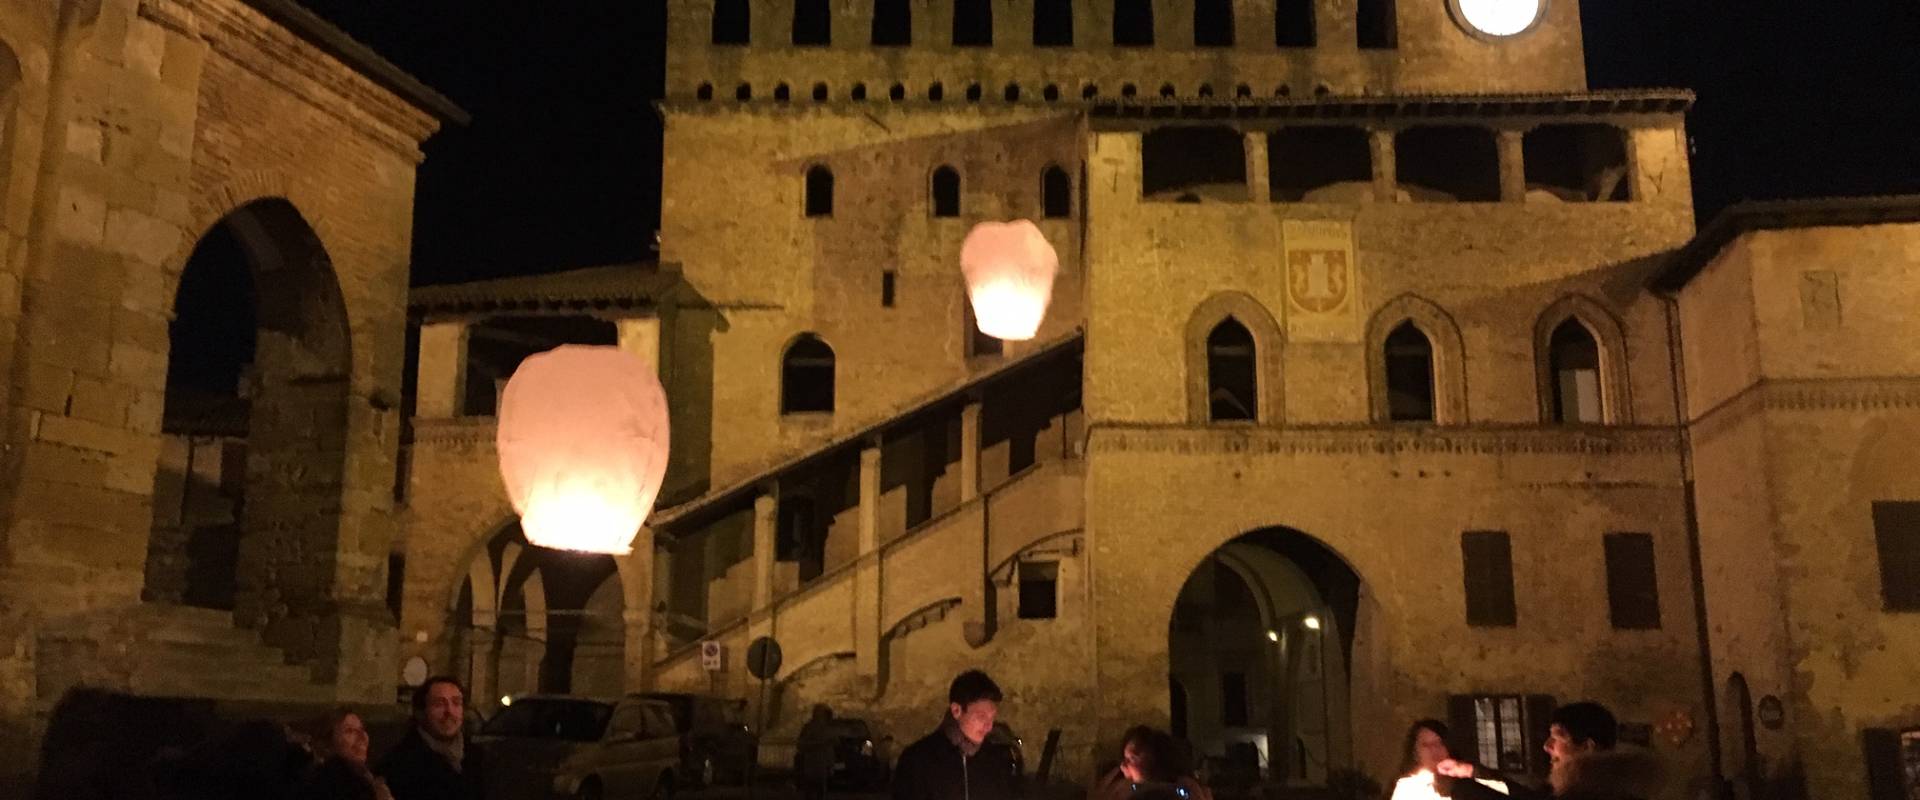 Podestà lanterne foto di Ufficio Turistico di Castell'Arquato